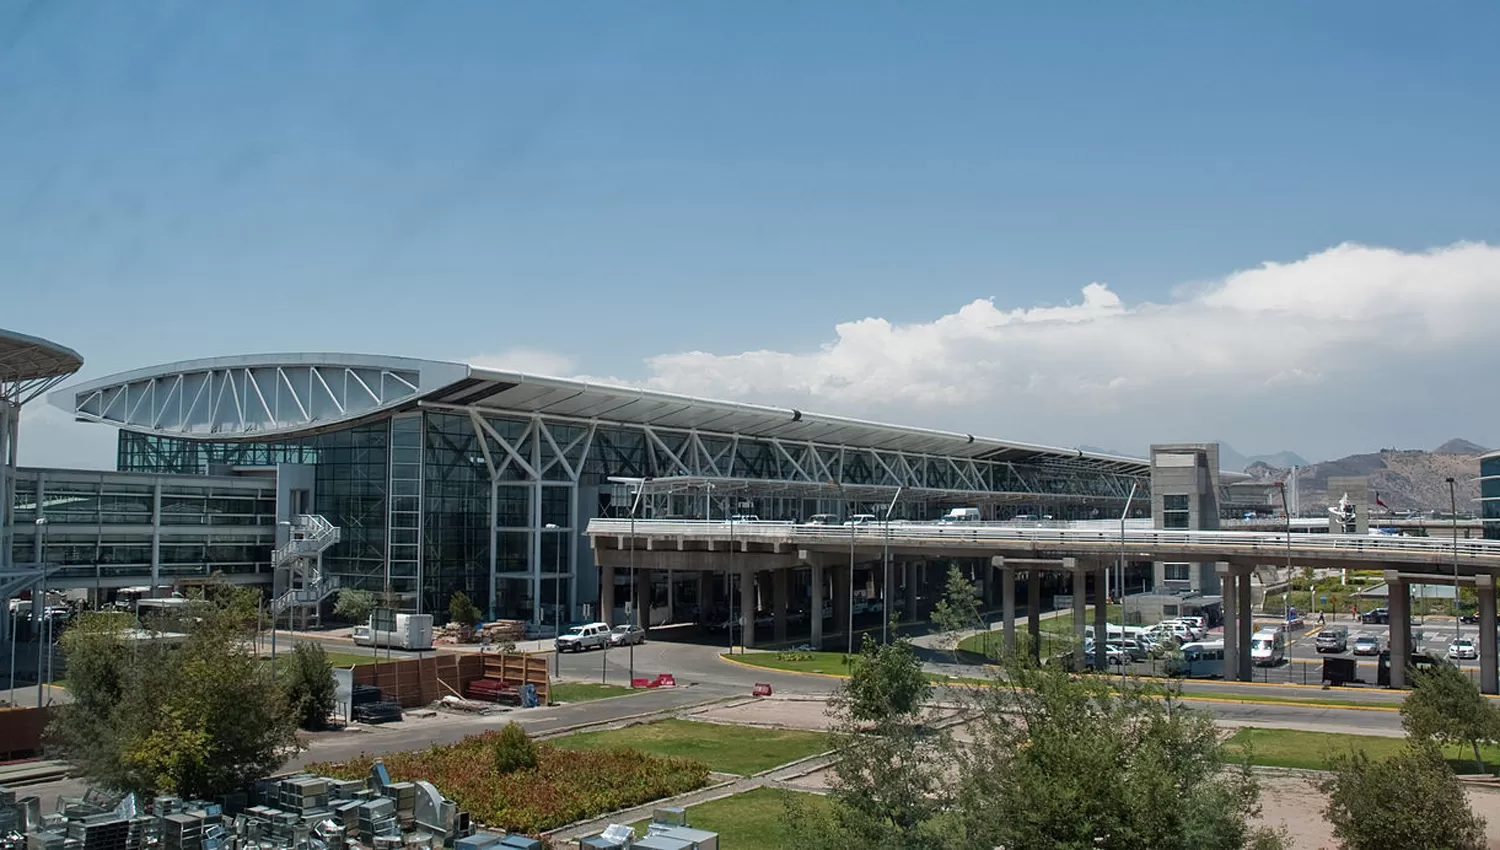 MODERNO. El aeropuerto conocido como Santiago-Pudahuel cuenta con dos pistas de aterrizajes y 18 puertas, además de estacionamiento para 3.300 autos y un hotel con 112 habitaciones. FOTO TOMADA DE AEROPUERTOS.NET